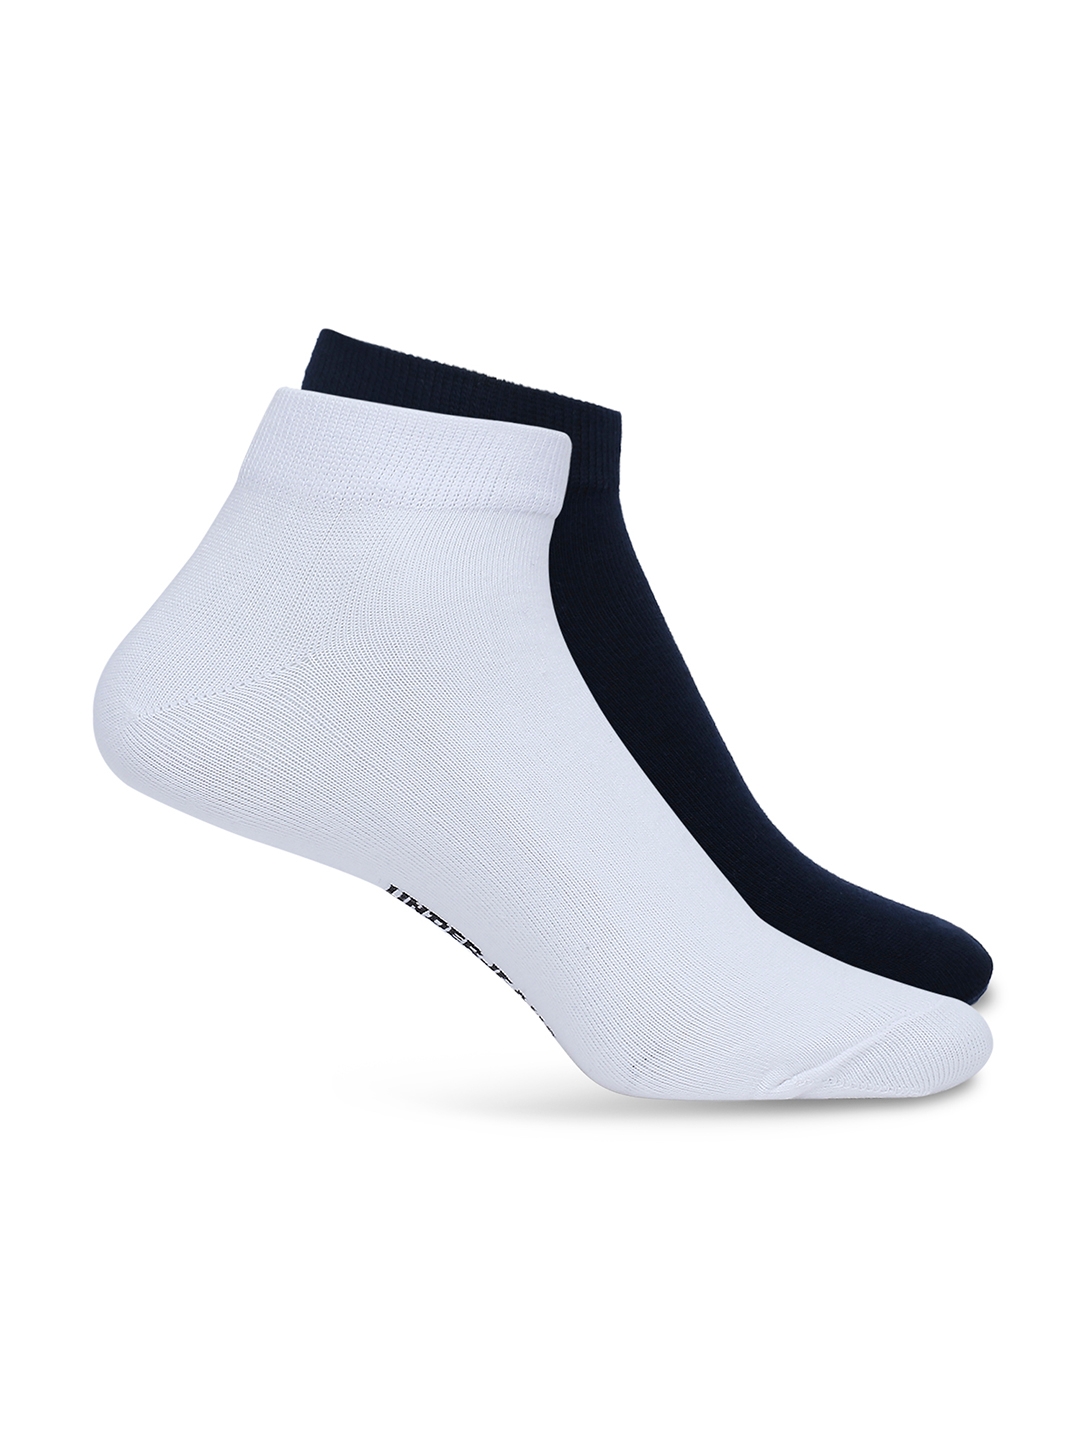 Underjeans By Spykar Men White & Navy Cotton Blend Sneaker Socks - Pack Of 2